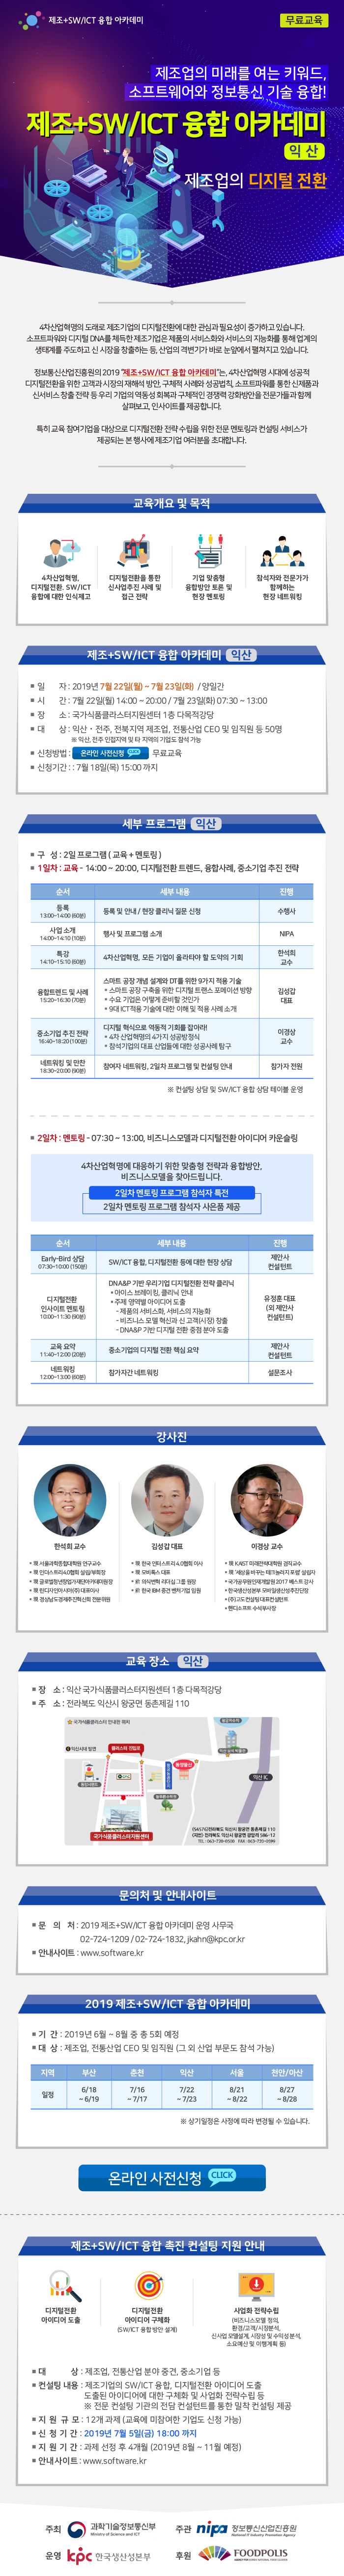 정보통신산업진흥원 제조+SW/ICT 융합 아카데미 안내